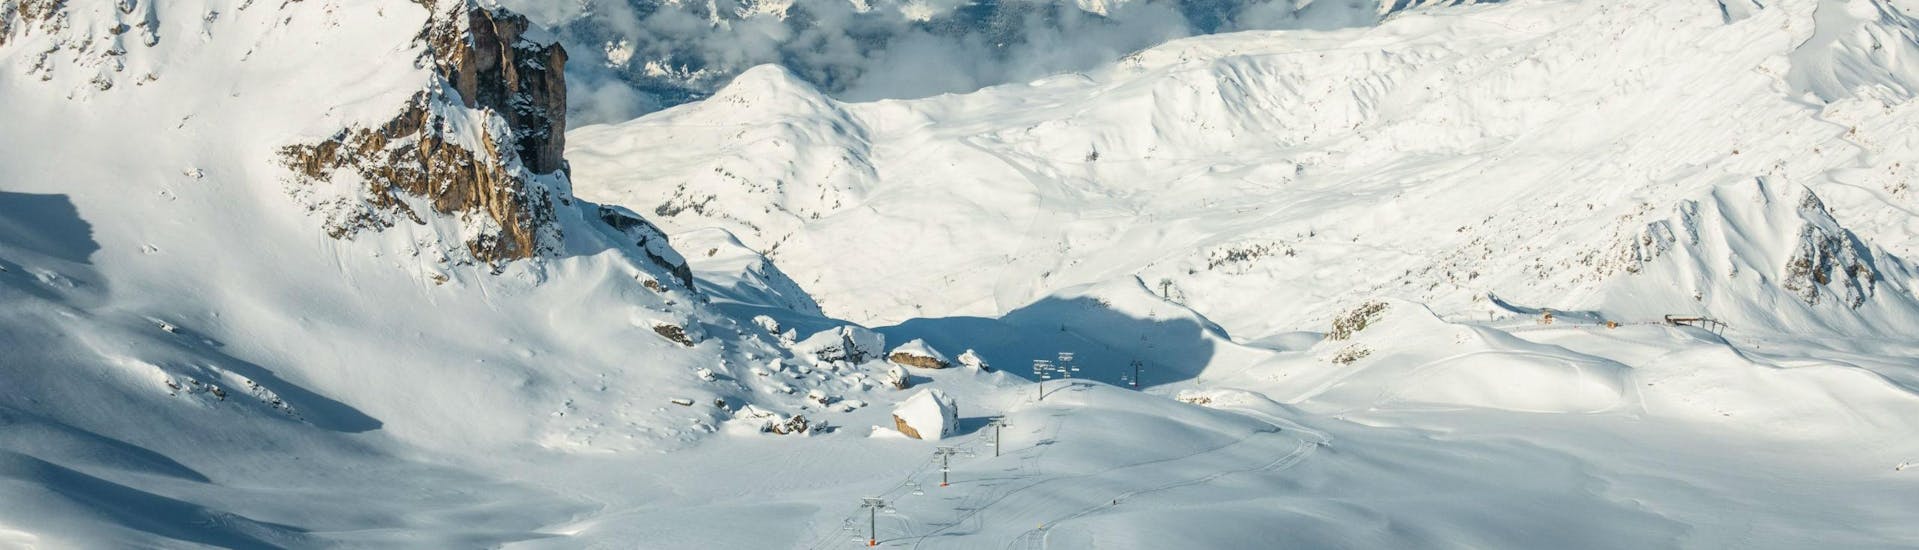 Une vue imprenable sur les pistes de ski de La Plagne, une station de ski très populaire dans les Alpes françaises, où les écoles de ski locales donnent des cours de ski à tous ceux qui veulent apprendre à skier.